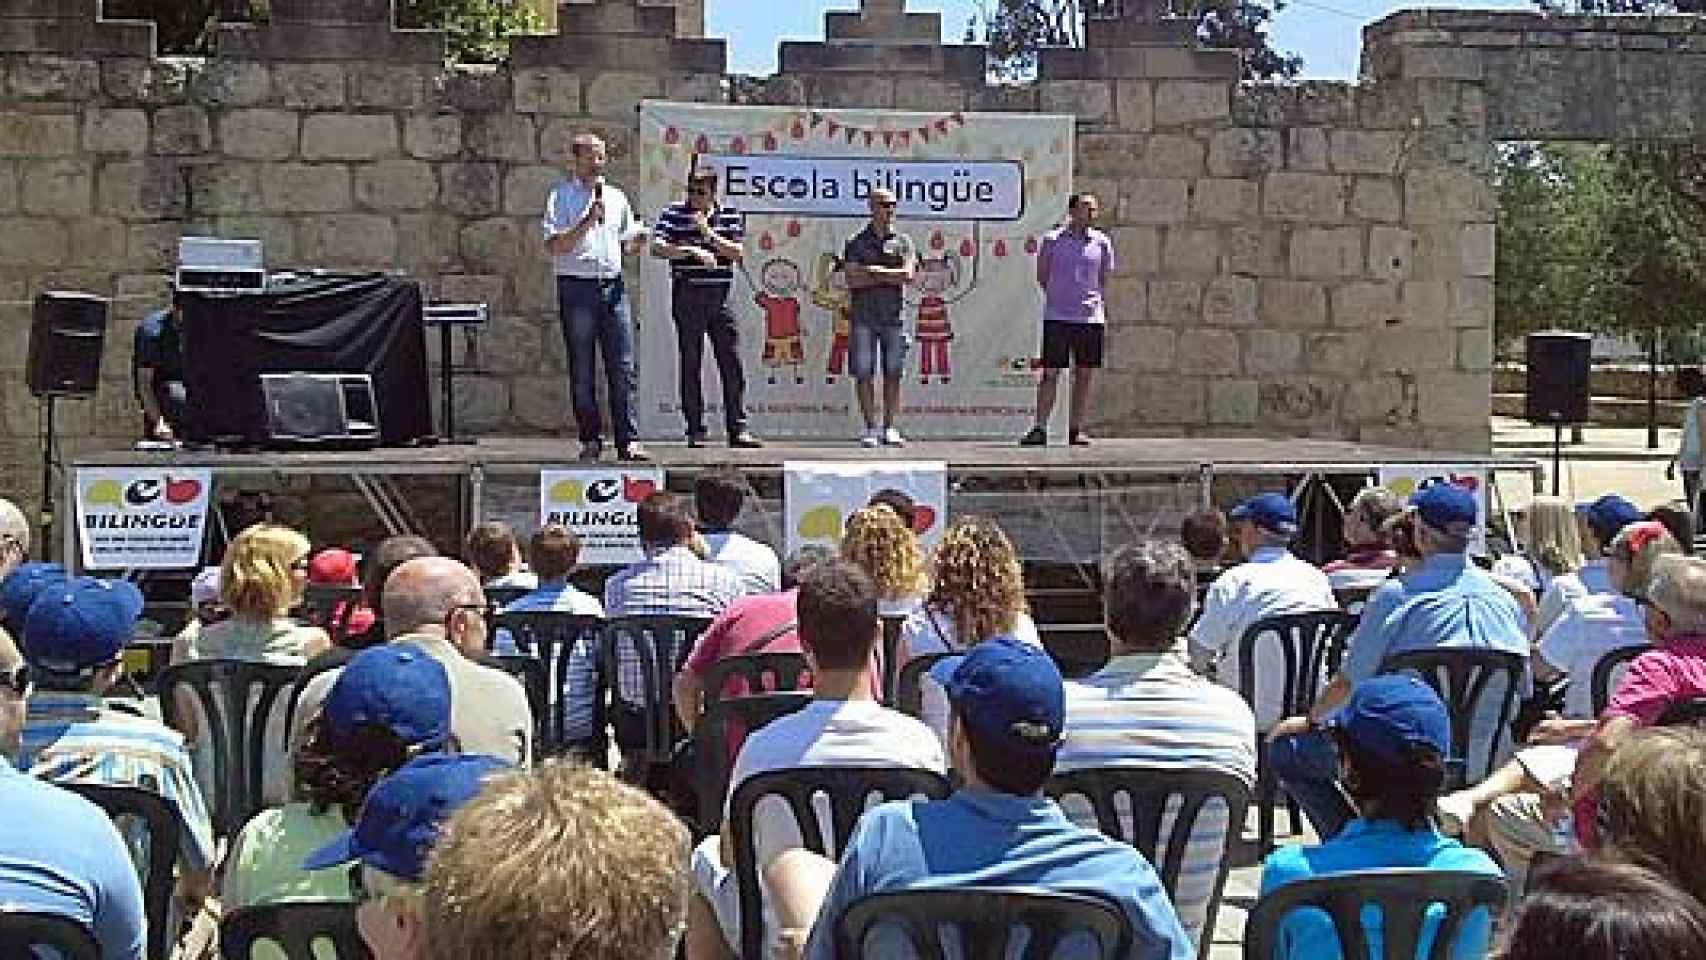 Primera edición de la Fiesta por una escuela bilingüe, celebrada en Sant Cugat